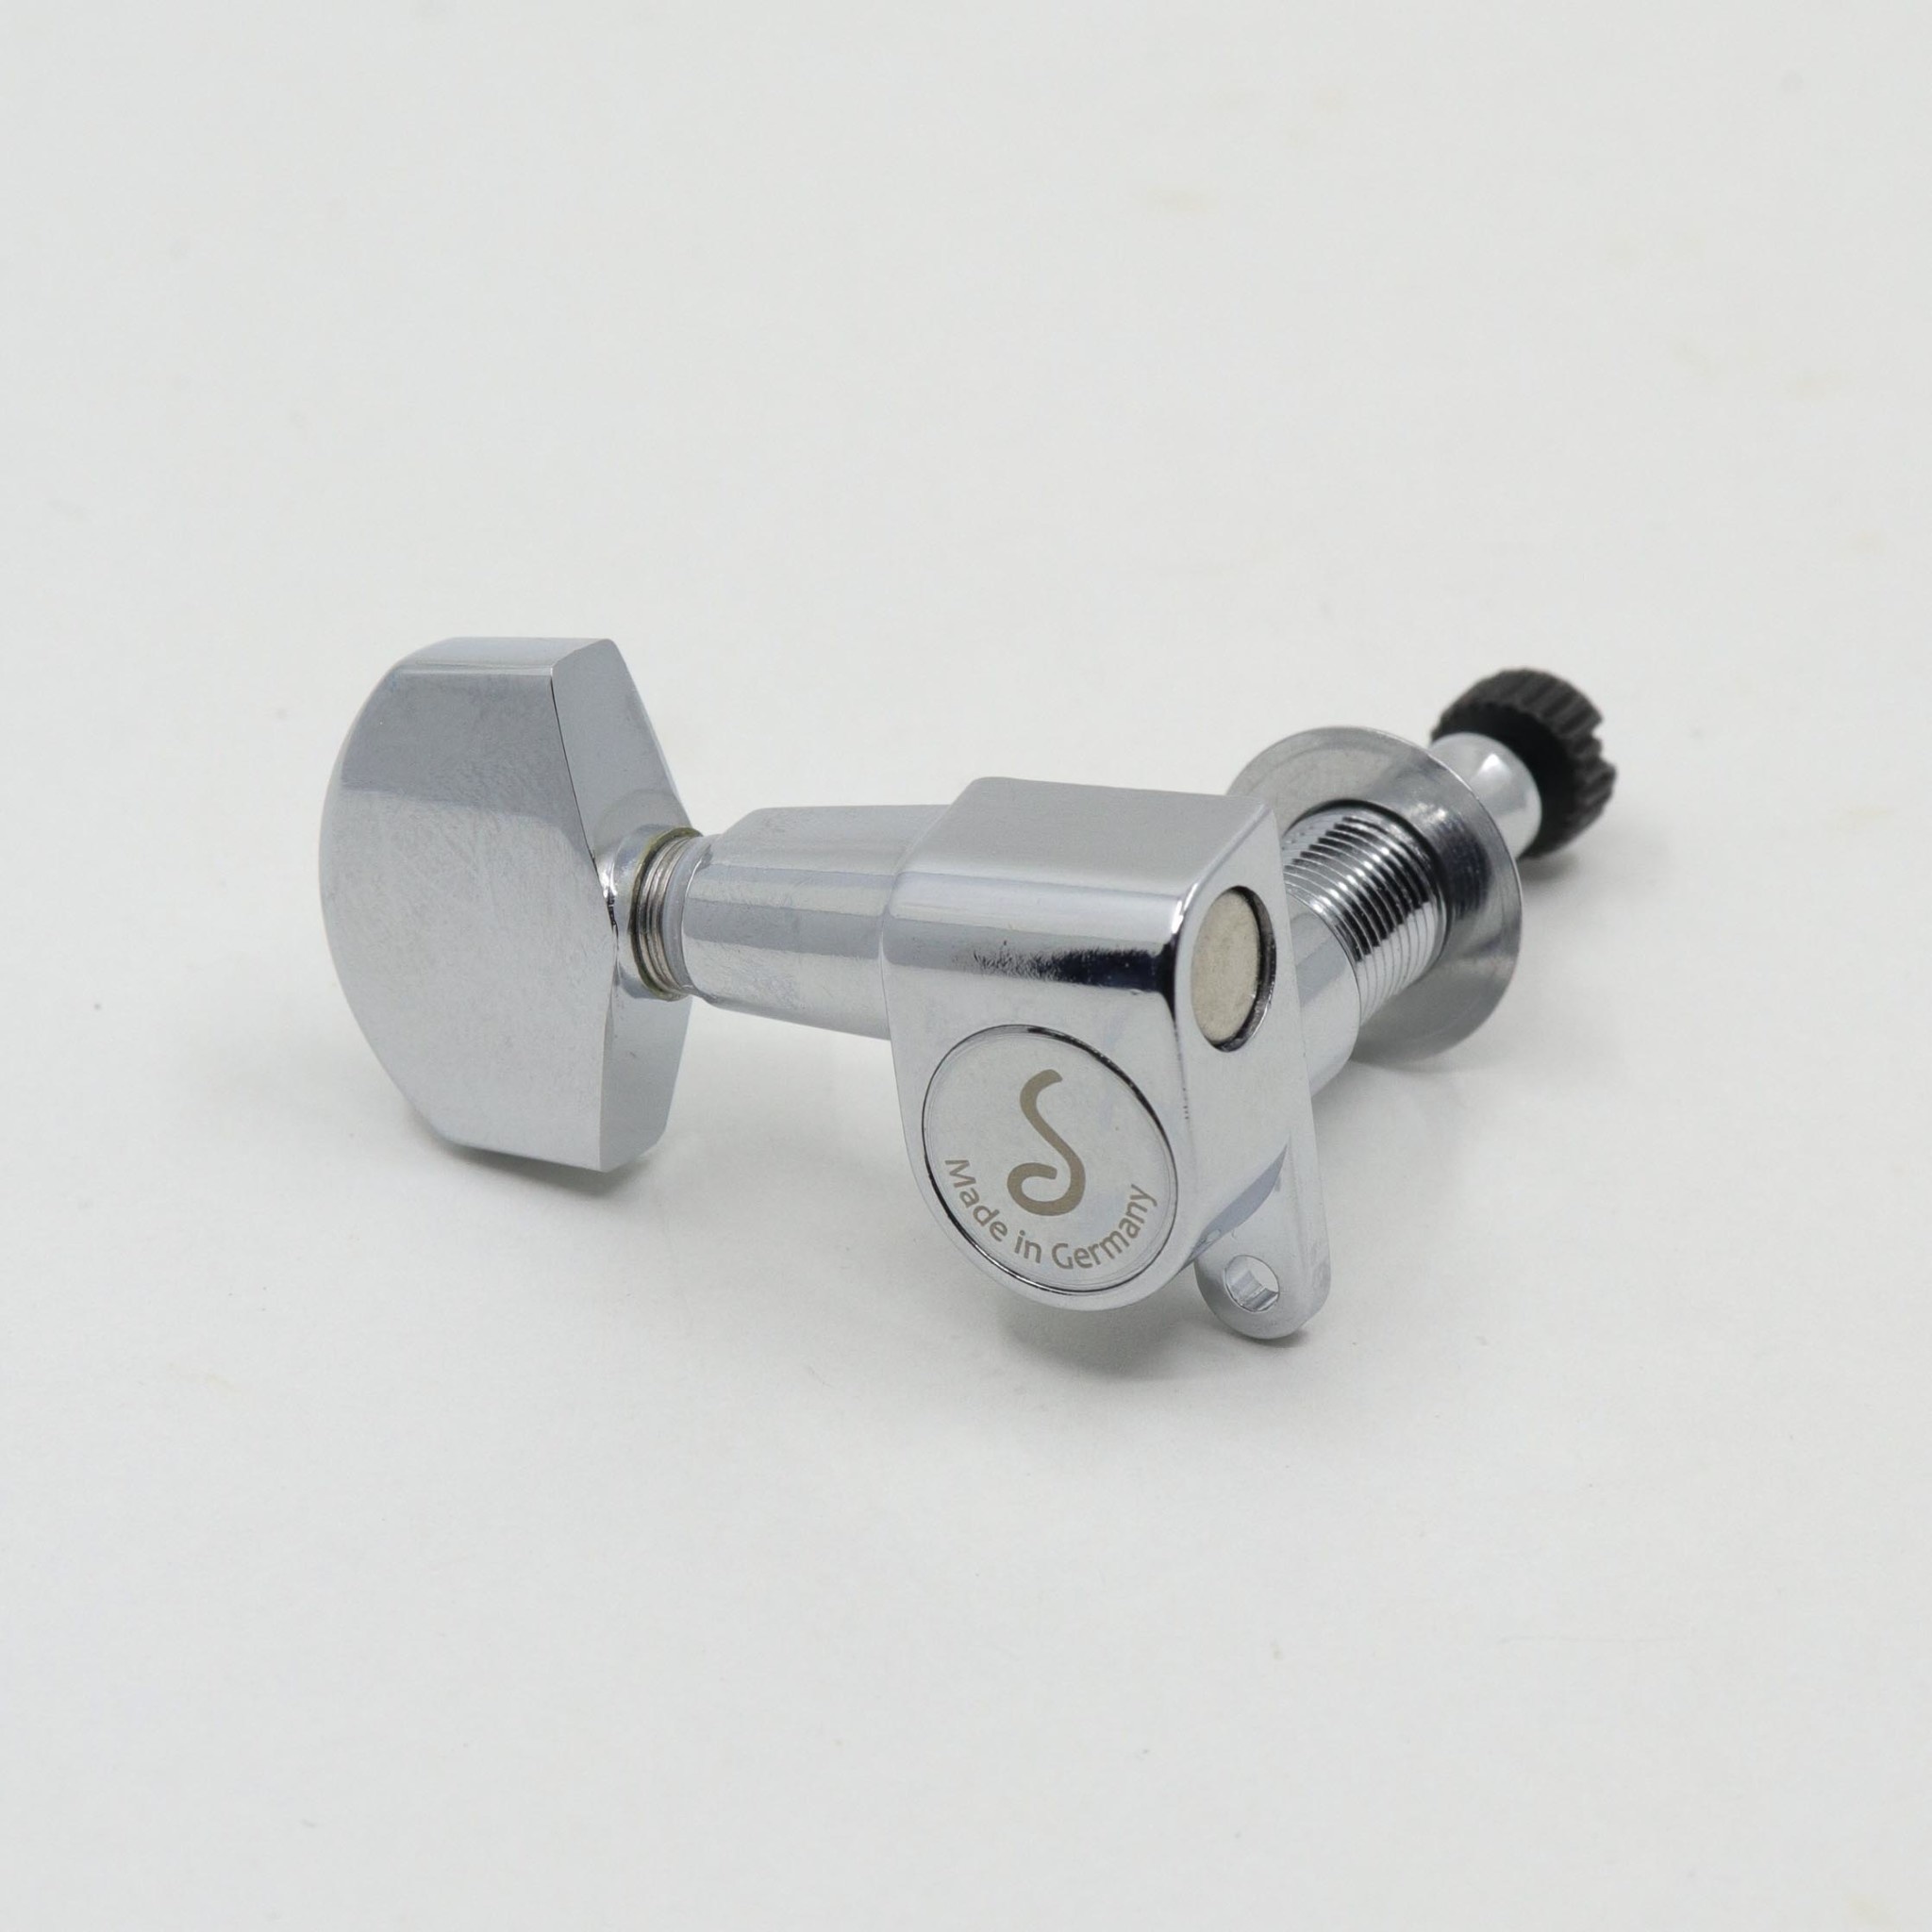 Schaller Schaller M6 Mini Locking Tuner - Chrome - Treble side